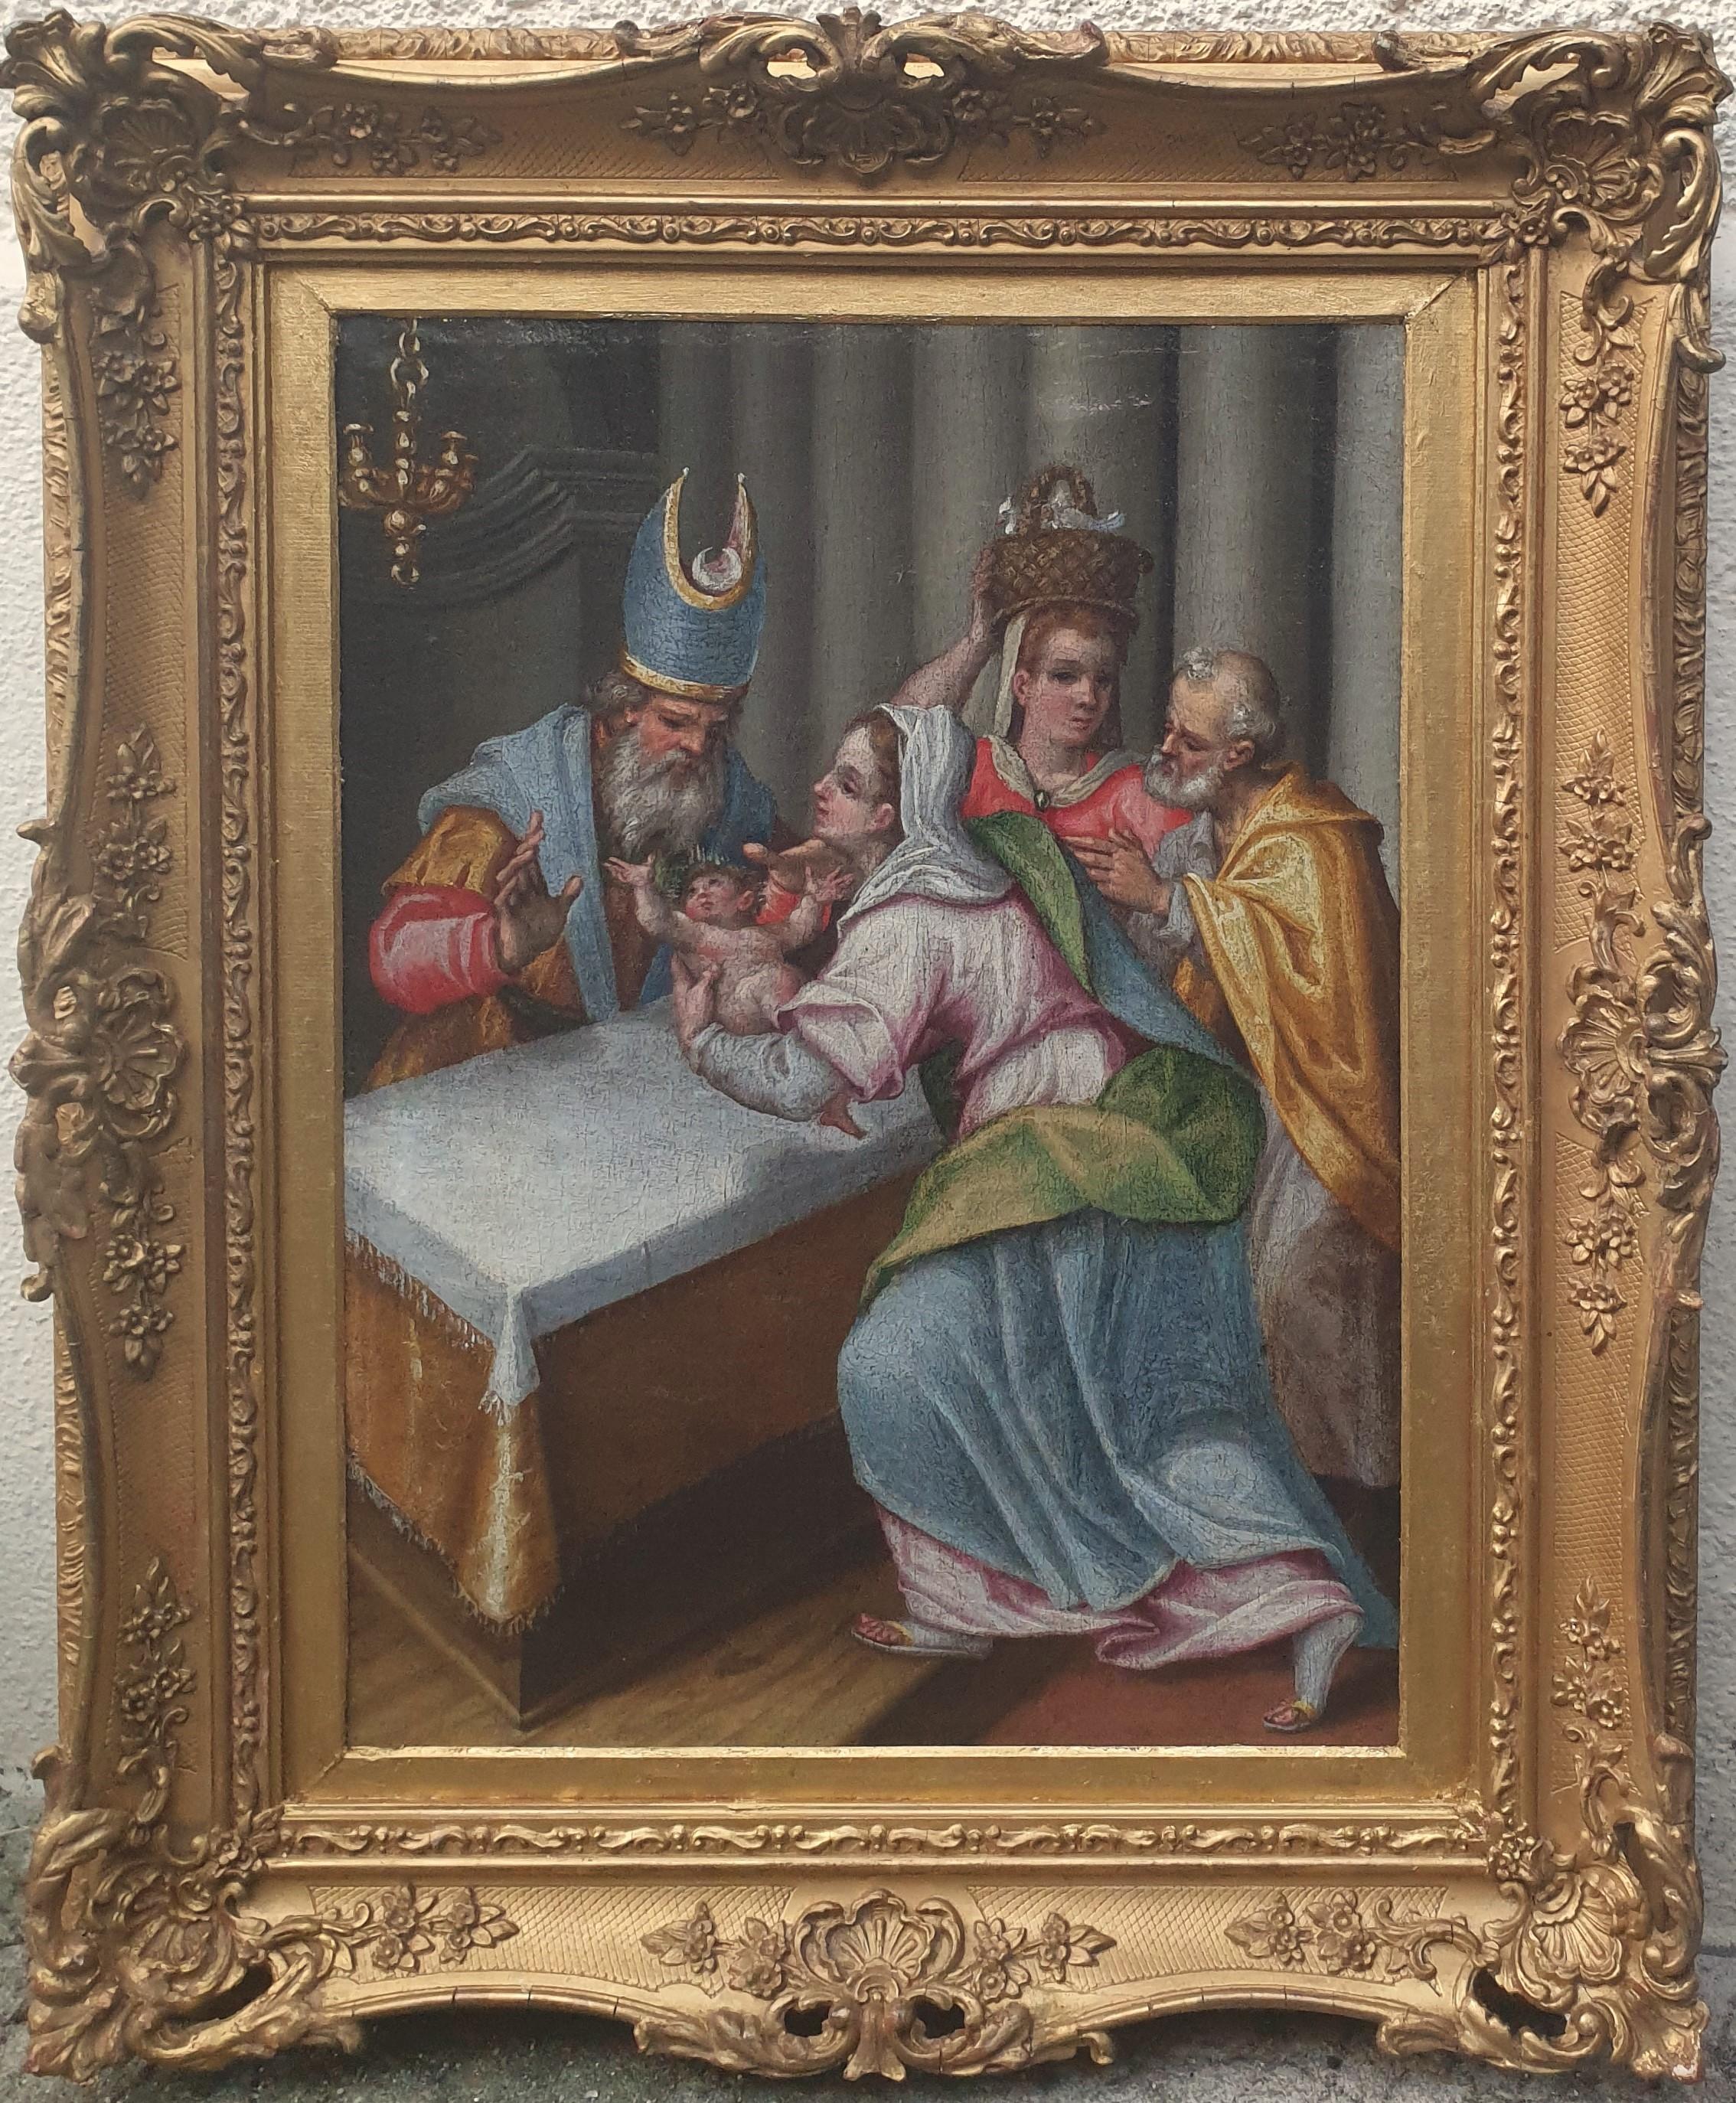 Unknown Figurative Painting – Klassische Präsentation des Jesus- Tempels, Italienische flämische Schule, 17. Jahrhundert, Öl auf Leinwand